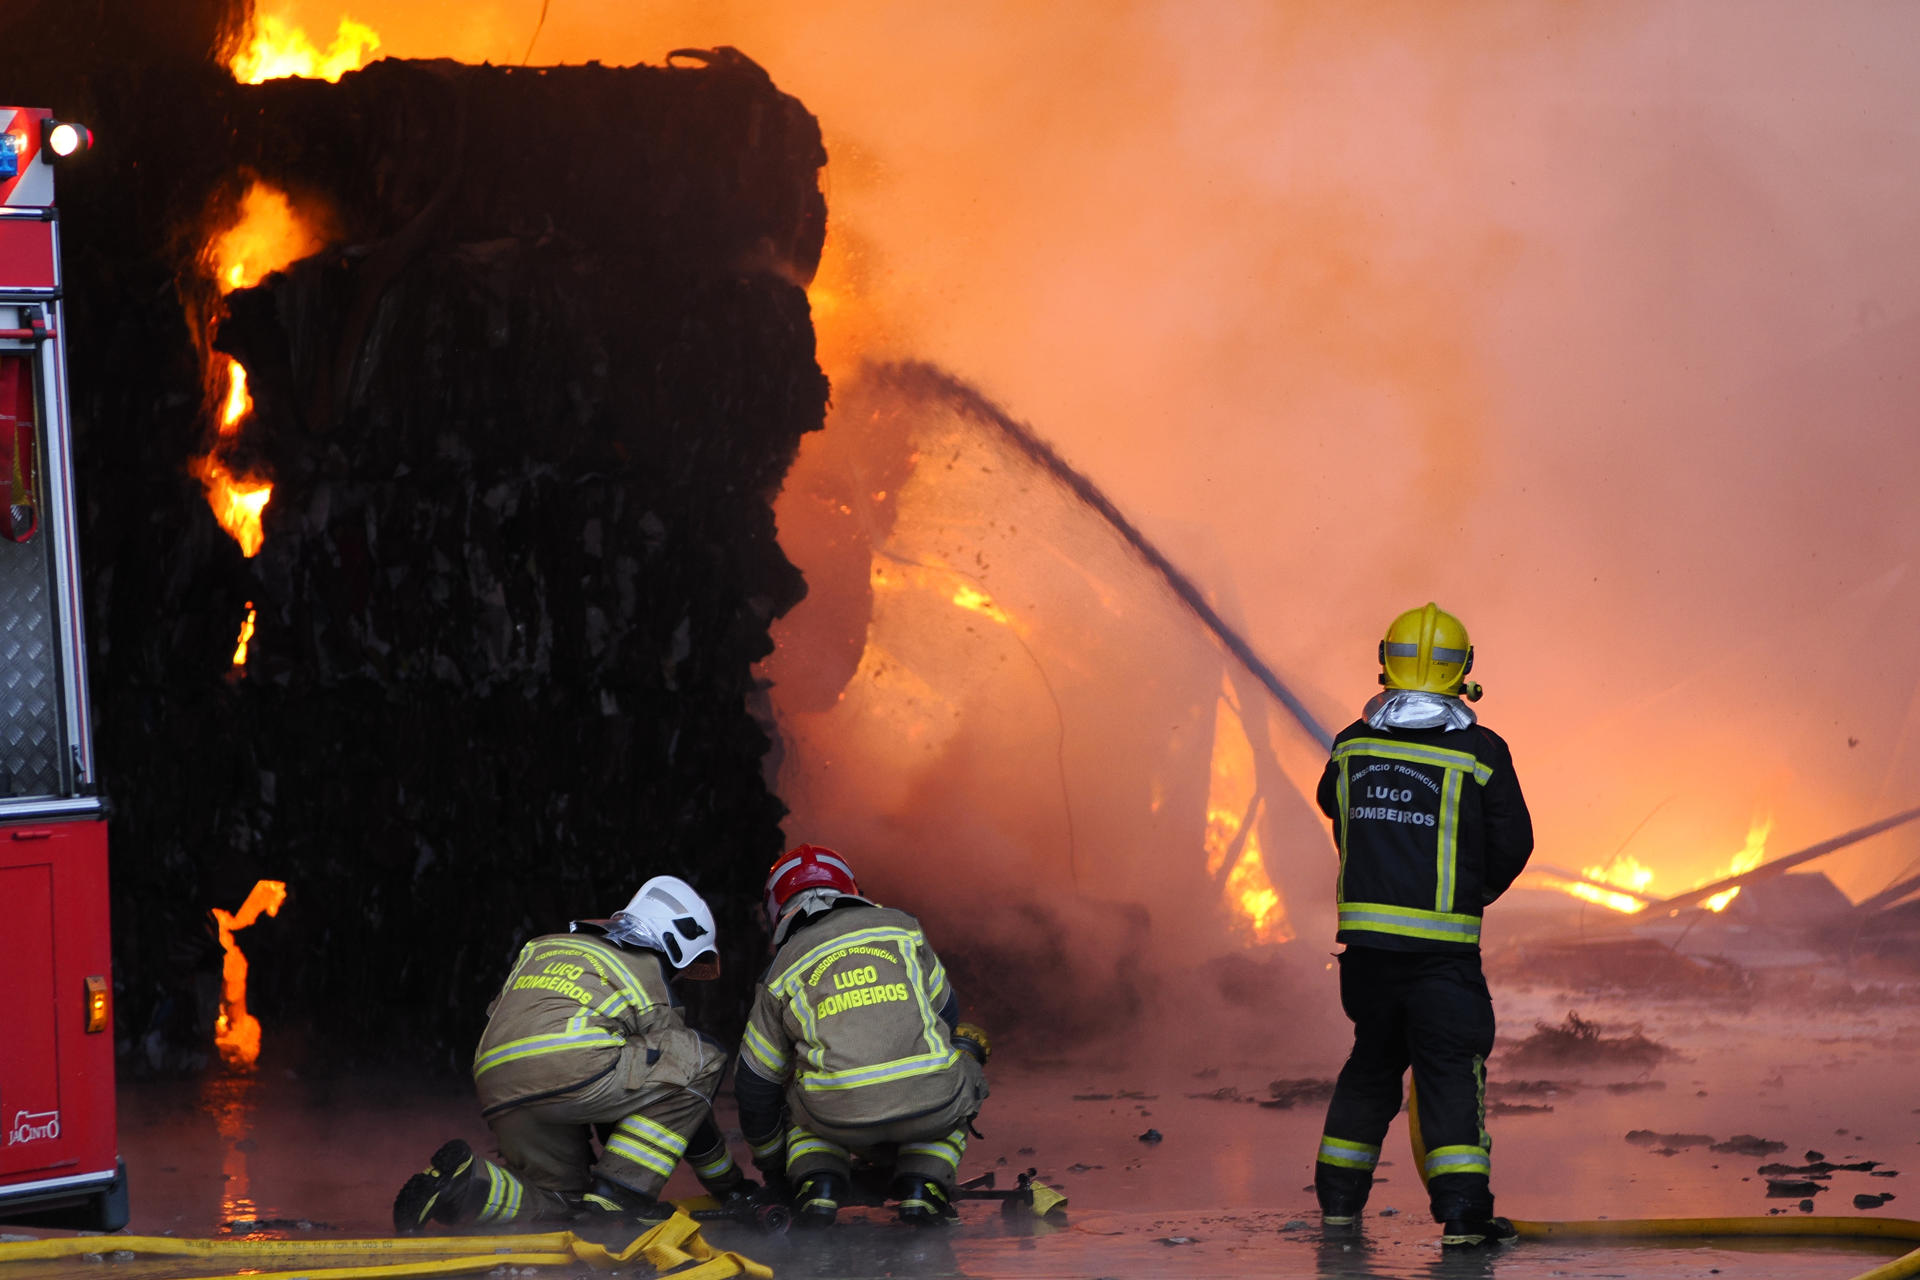 Bomberos de Lugo trabajan en las labores de extinción del incendio declarado este jueves en Ambigal 360, nave industrial de reciclaje situada en el polígono Sete Pontes, en Vilalba (Lugo), que ha obligado a la Xunta a activar el Plan Territorial de Emergencias. EFE/Eliseo Trigo